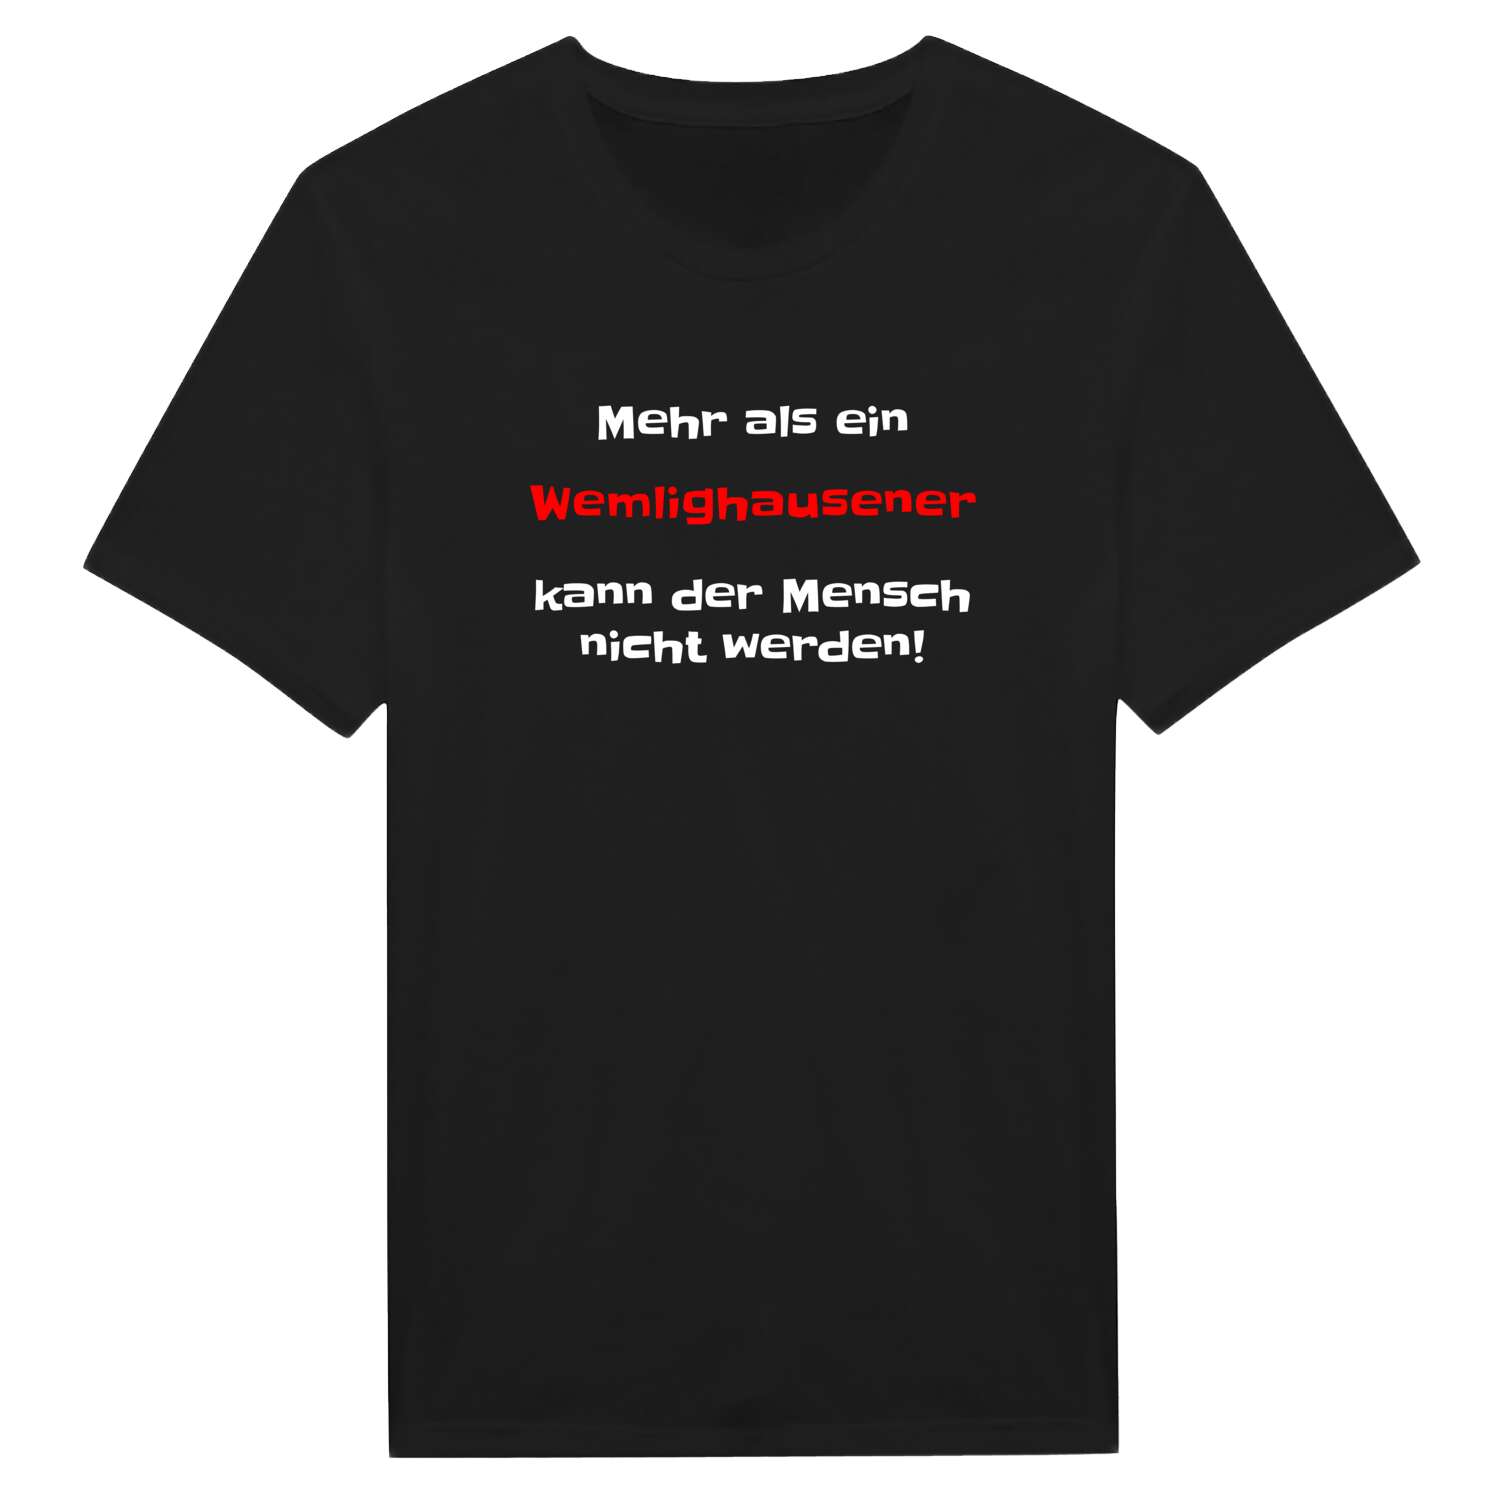 Wemlighausen T-Shirt »Mehr als ein«